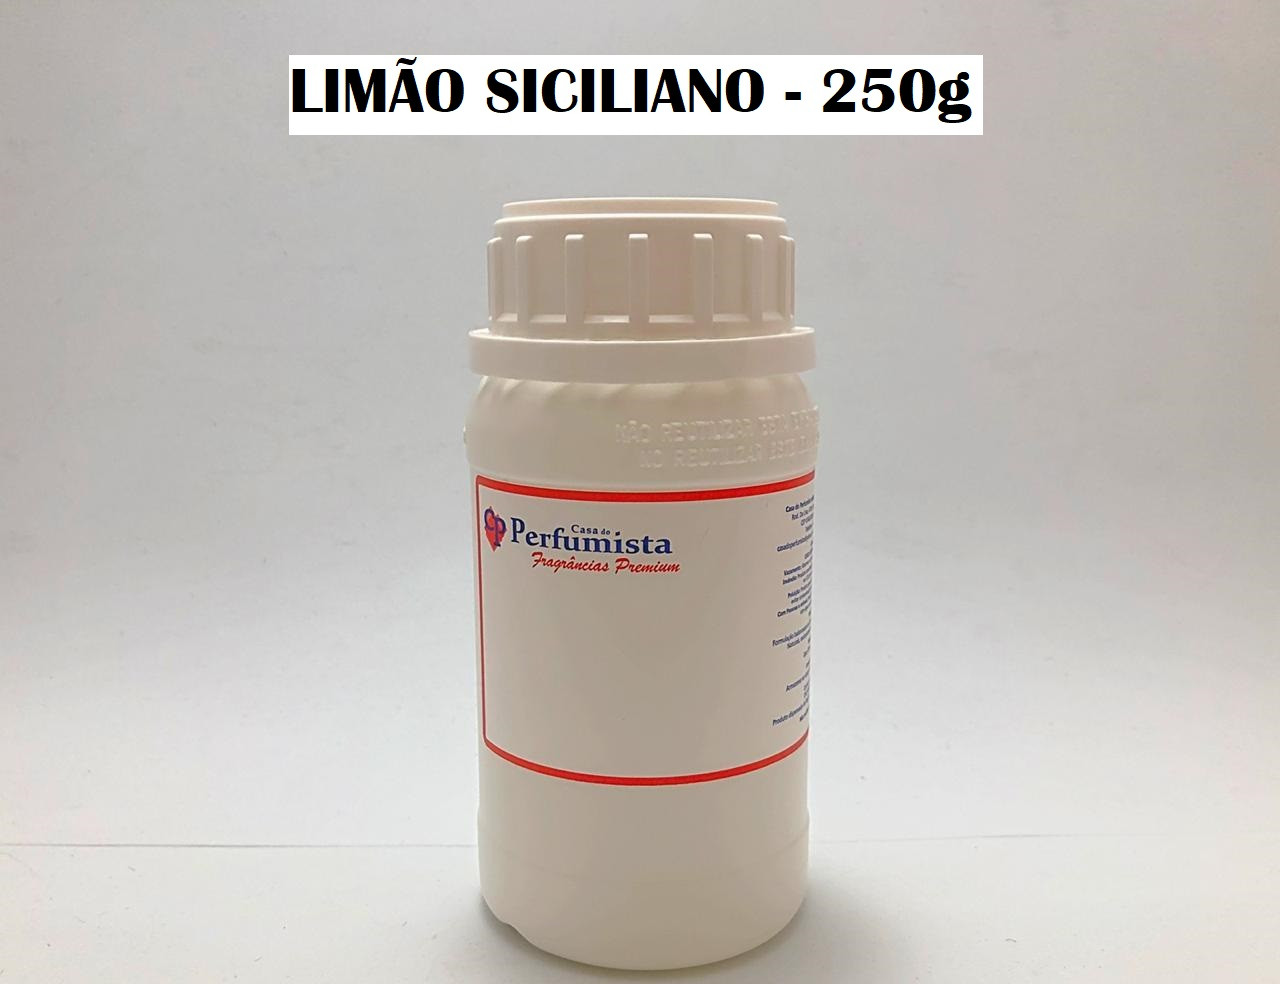 LIMÃO SICILIANO - 250g